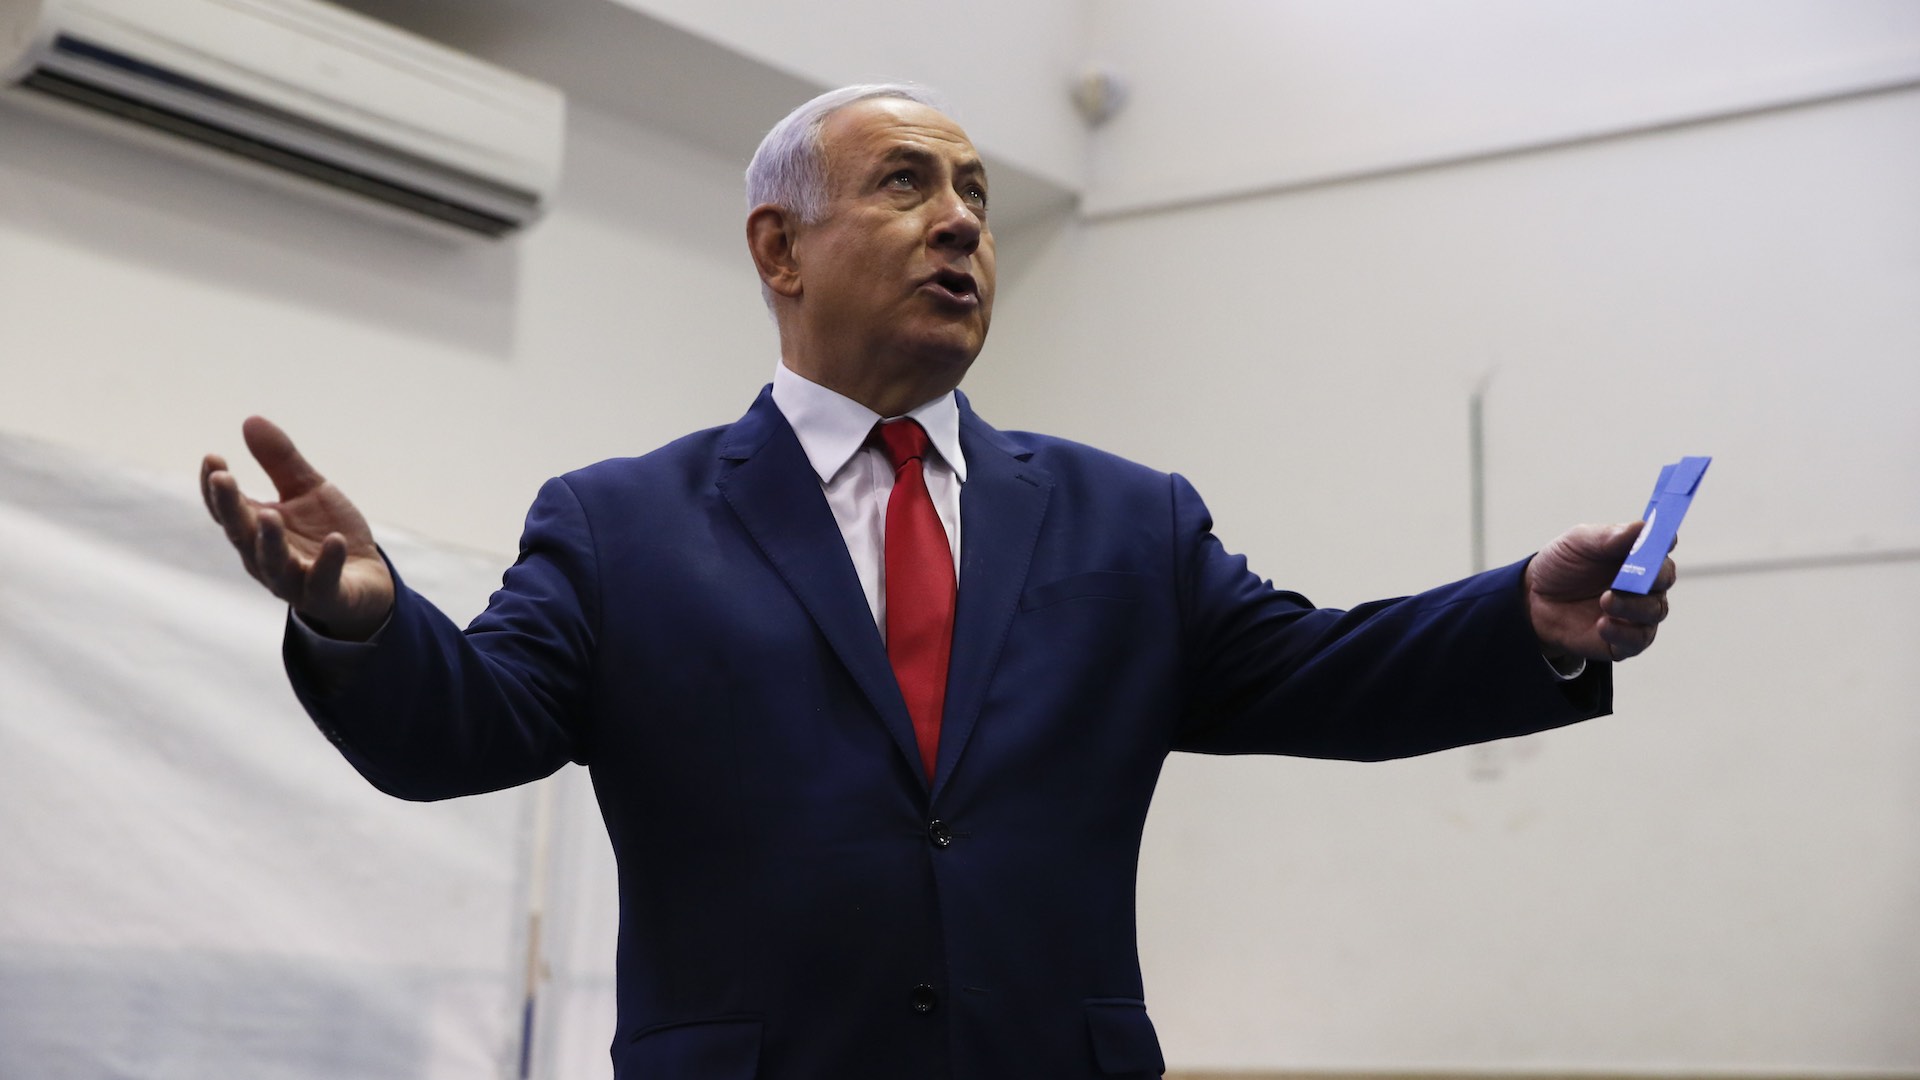 Los sondeos a pie de urna dan empate entre Netanyahu y el centrista Gantz en las elecciones israelíes